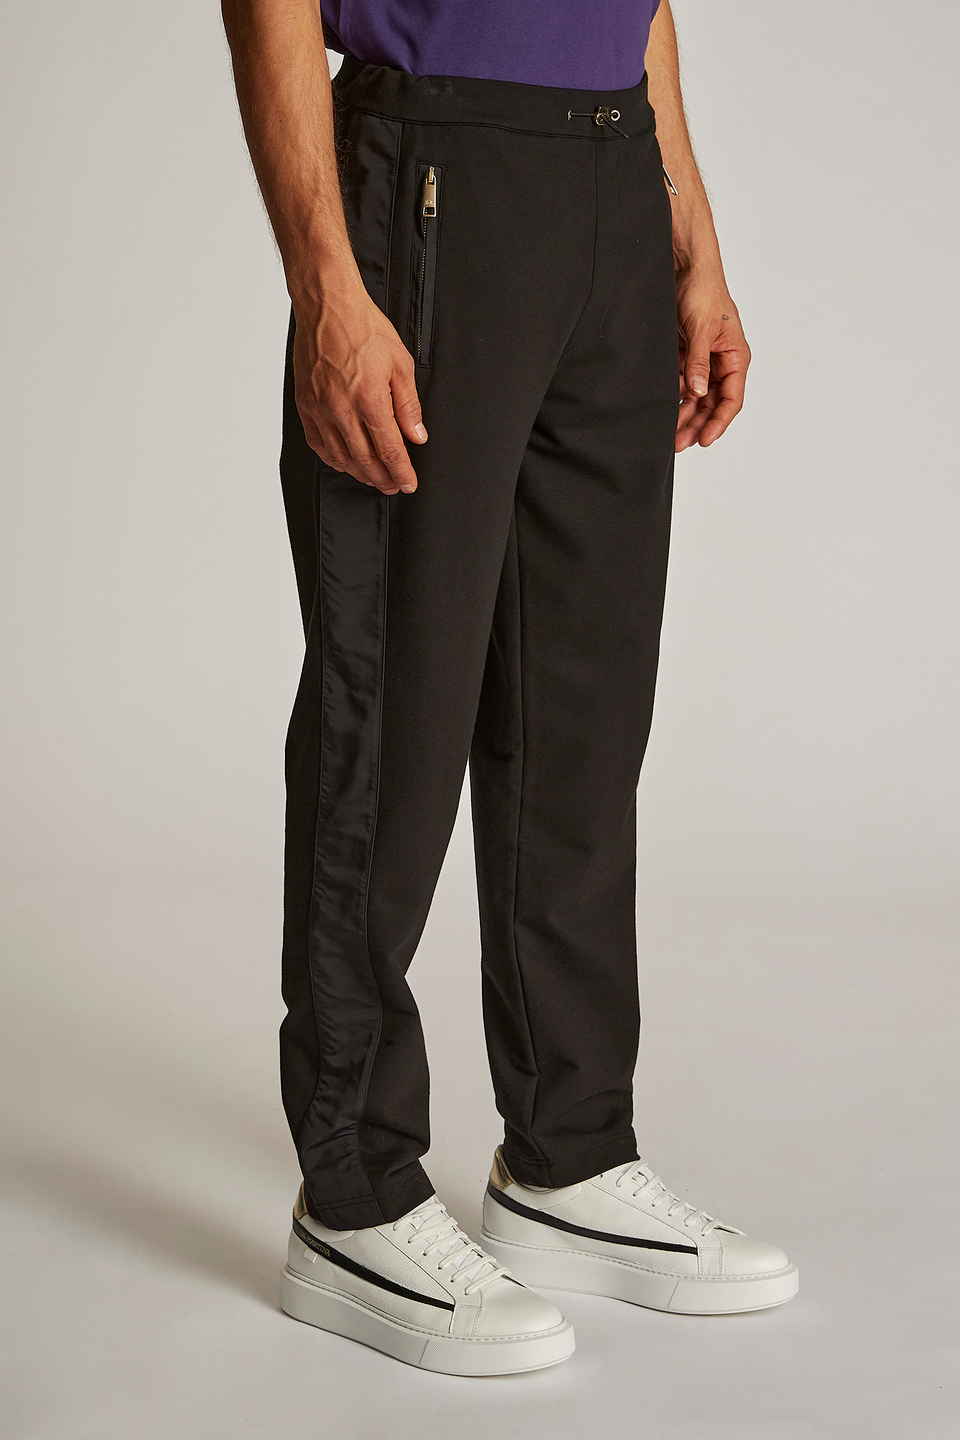 Pantalone da uomo modello jogger in cotone elasticizzato regular fit | La Martina - Official Online Shop